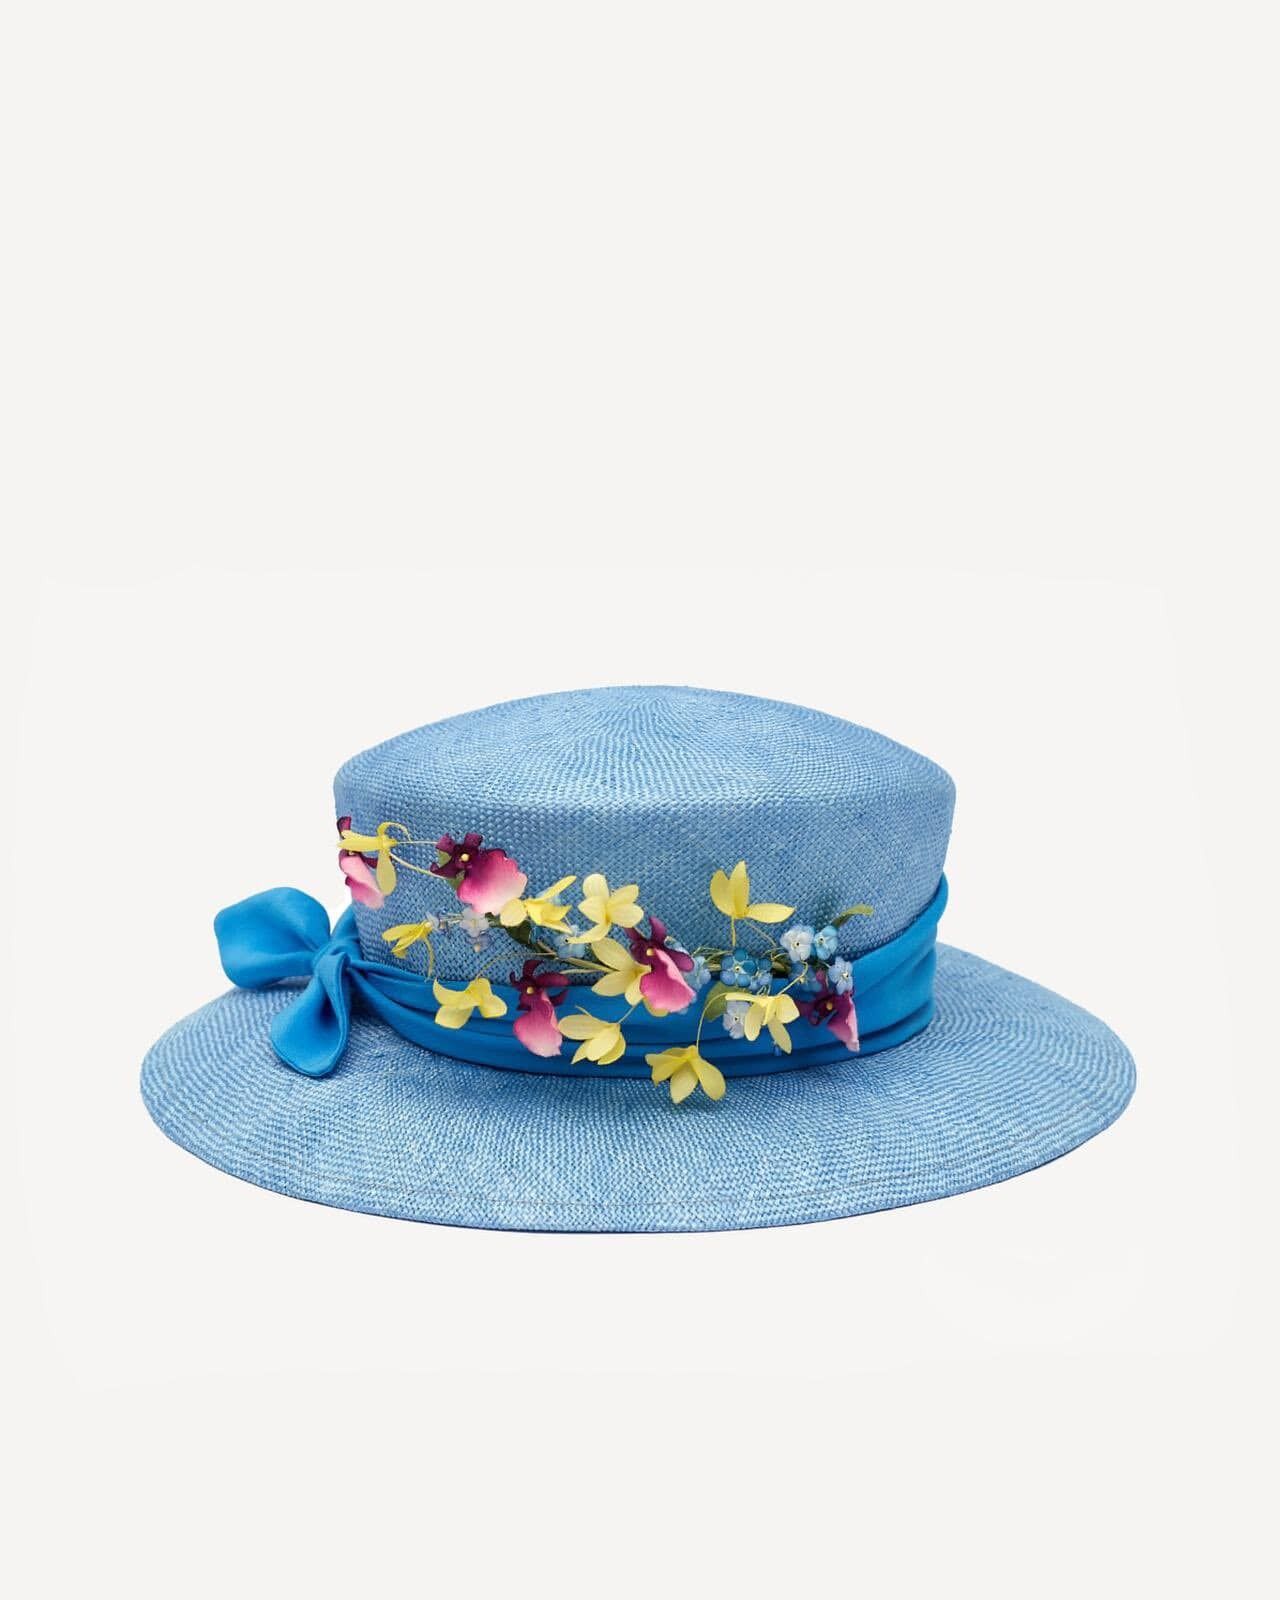 Подарунок до Дня Незалежності: український дизайнер створив капелюх для Єлизавети ІІ